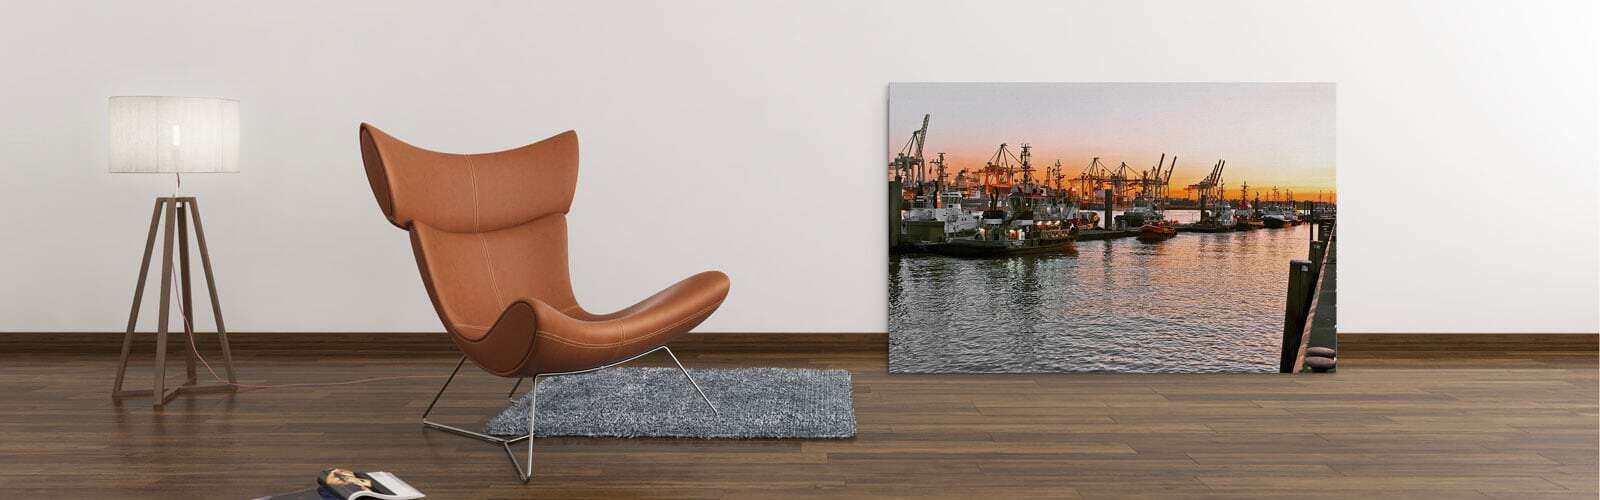 Bilder vom Hamburger Hafen - Hafenschlepper als Wandbild kaufen